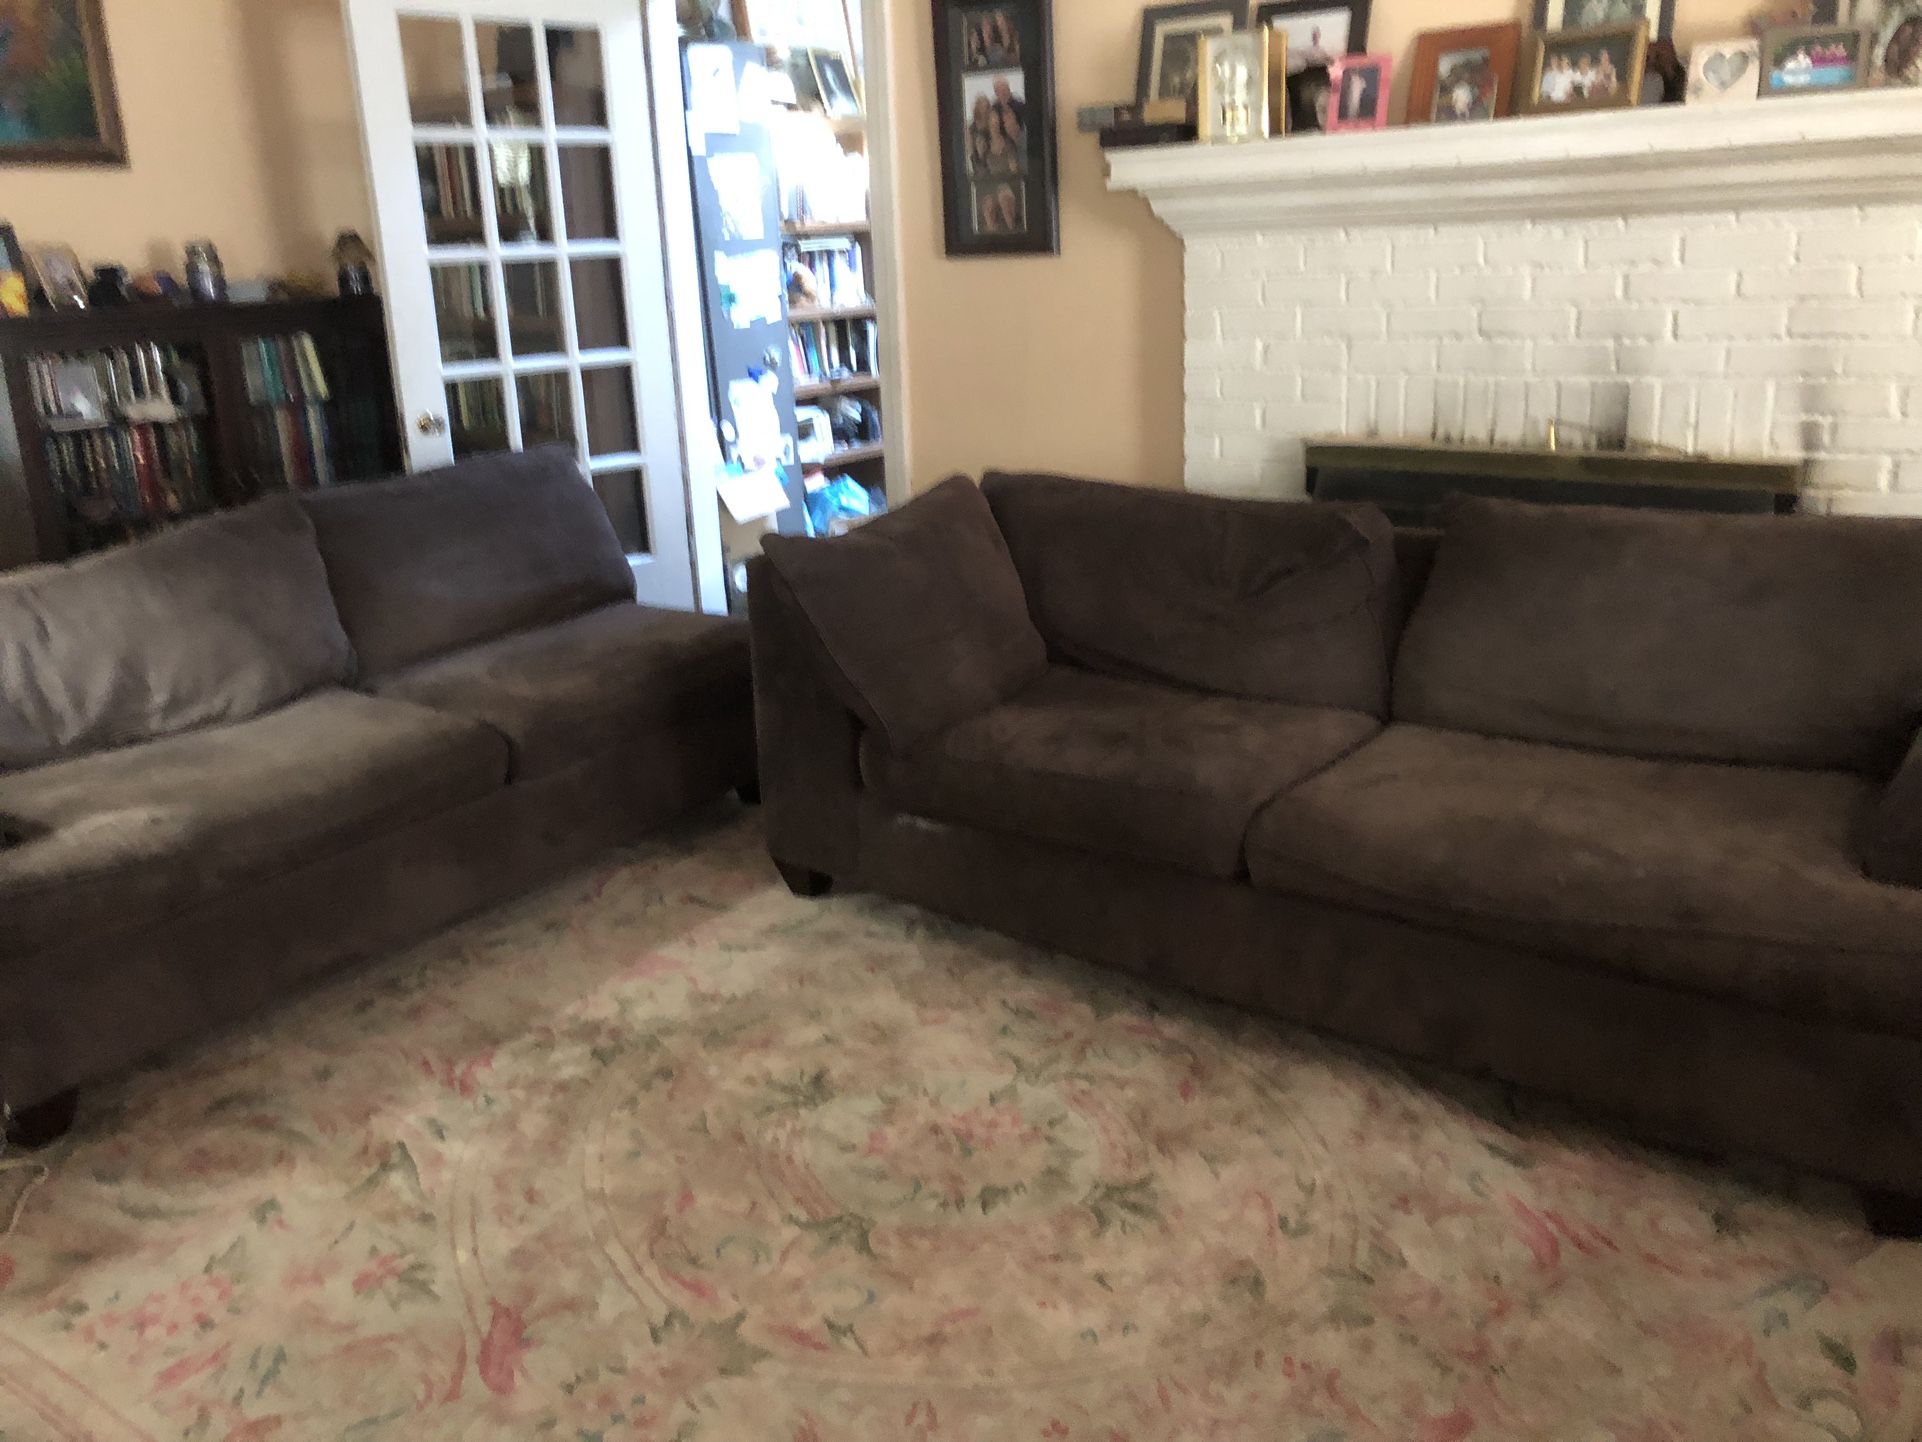 L-shaped Sofa